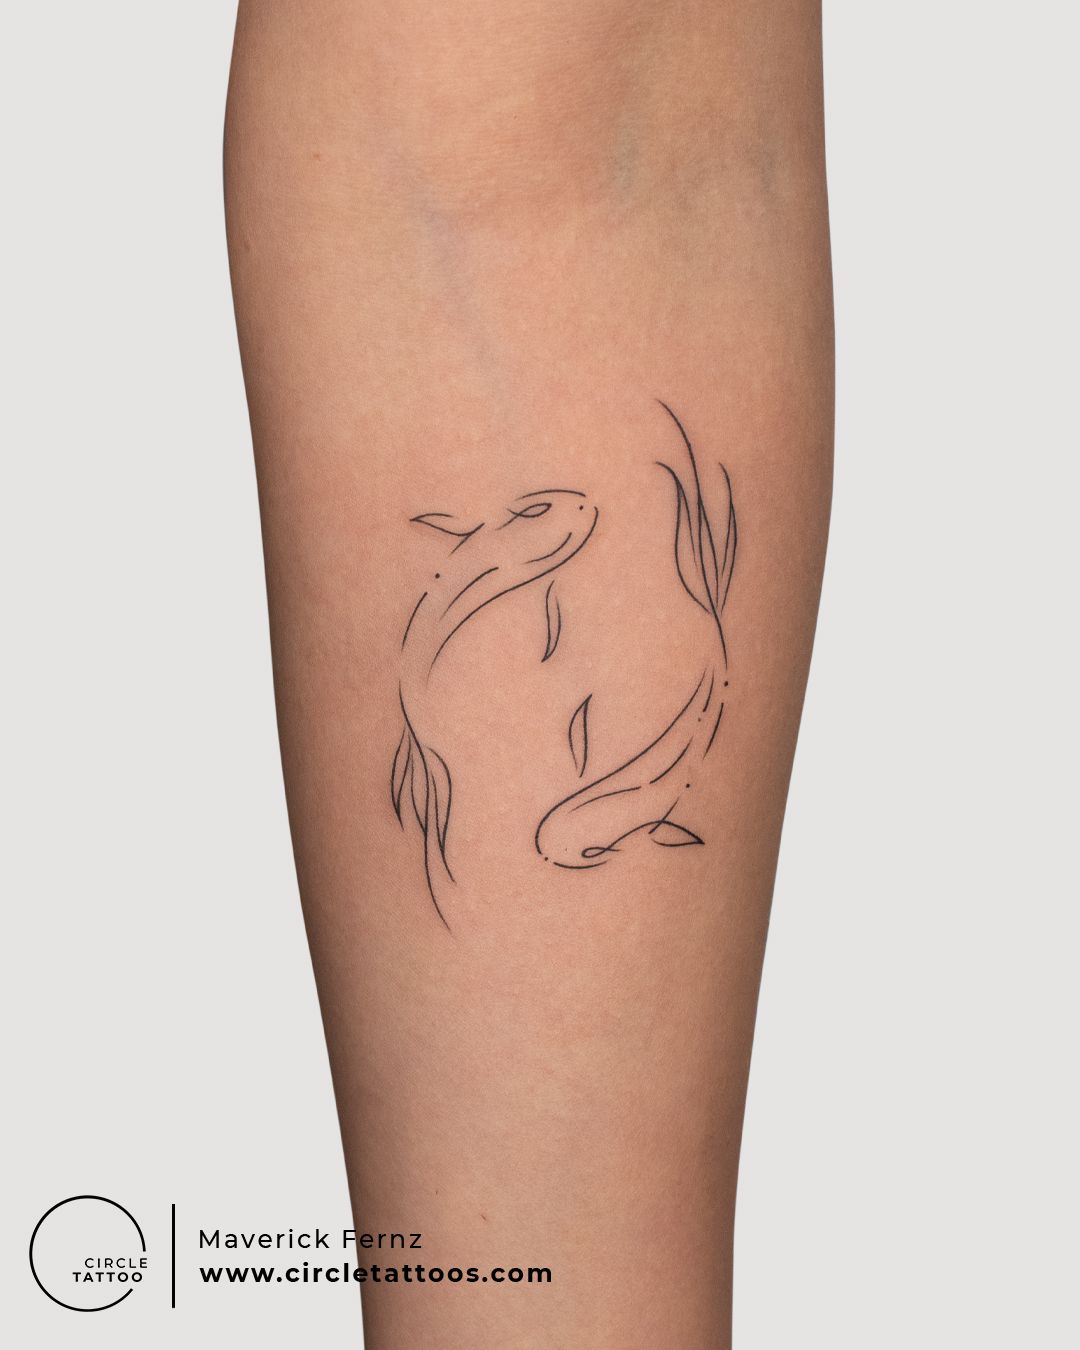 Meaningful Koi Fish Tattoo Ideas  Designs  Tattoo Glee